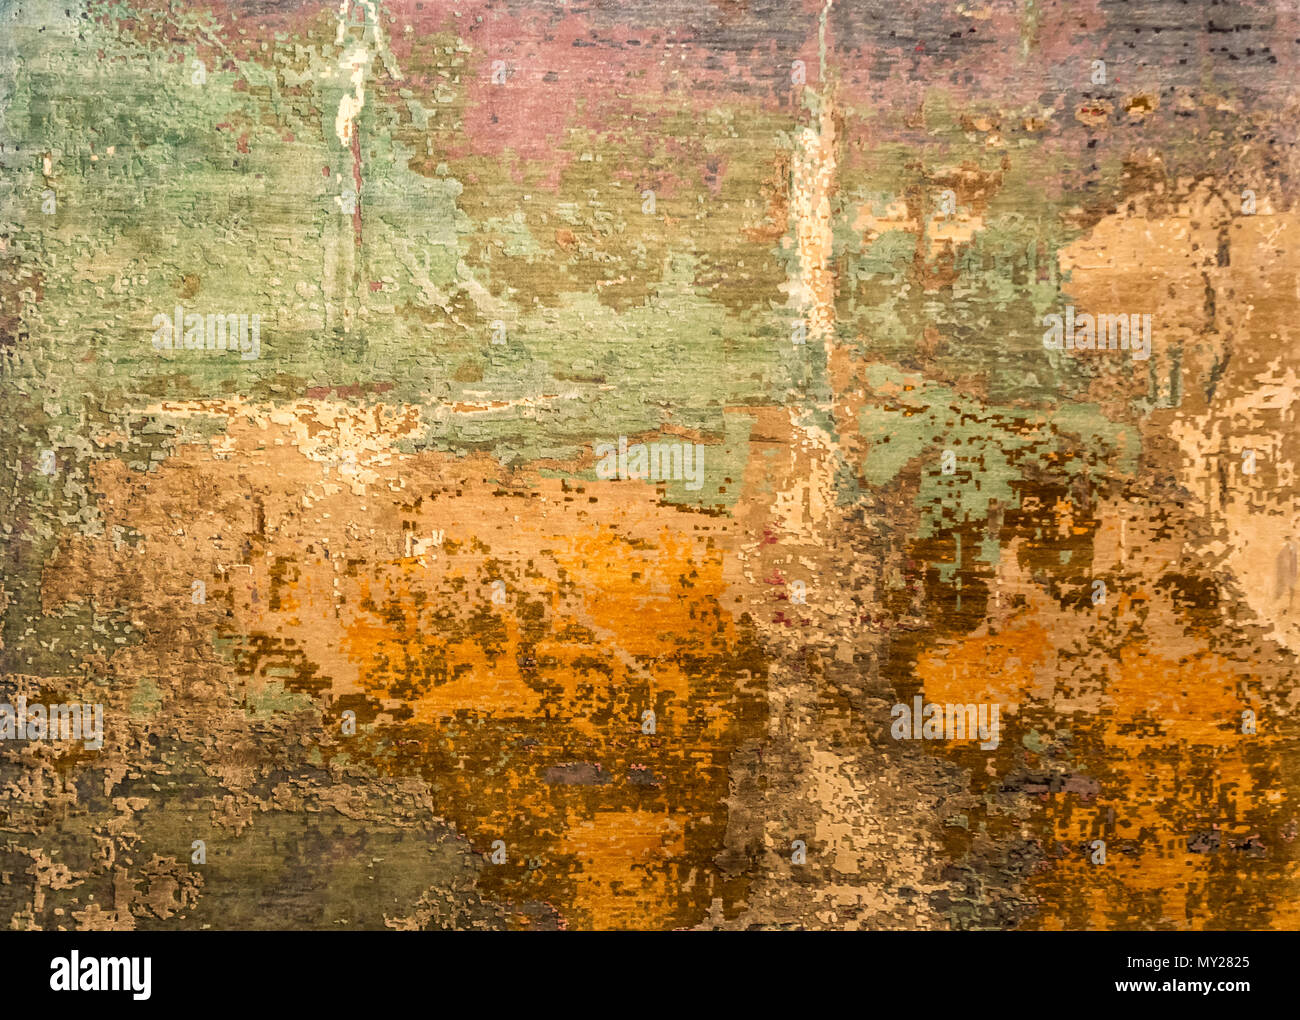 Vieux Mur Grunge texture background. Couches de peinture mur fissure avec de la rouille en dessous Banque D'Images